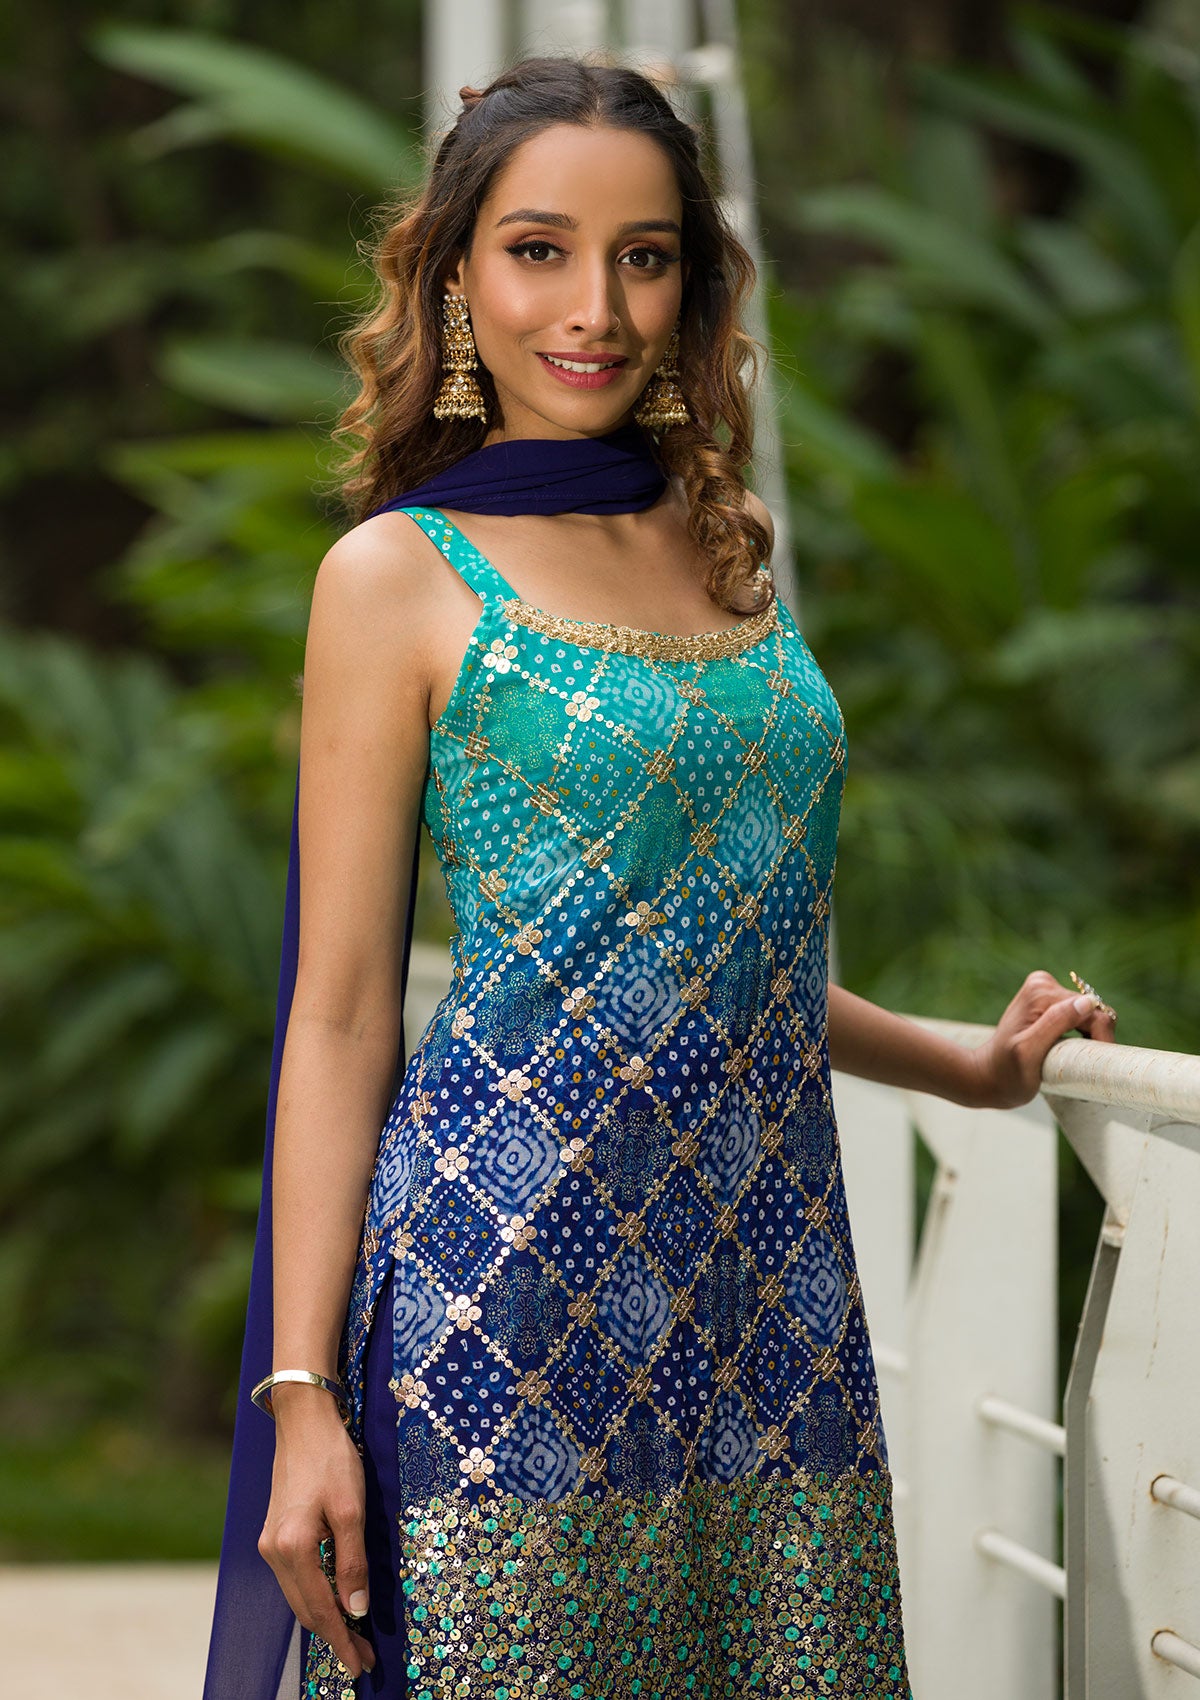 Banarasi zari paneled kurta with front pockets- Teal Blue